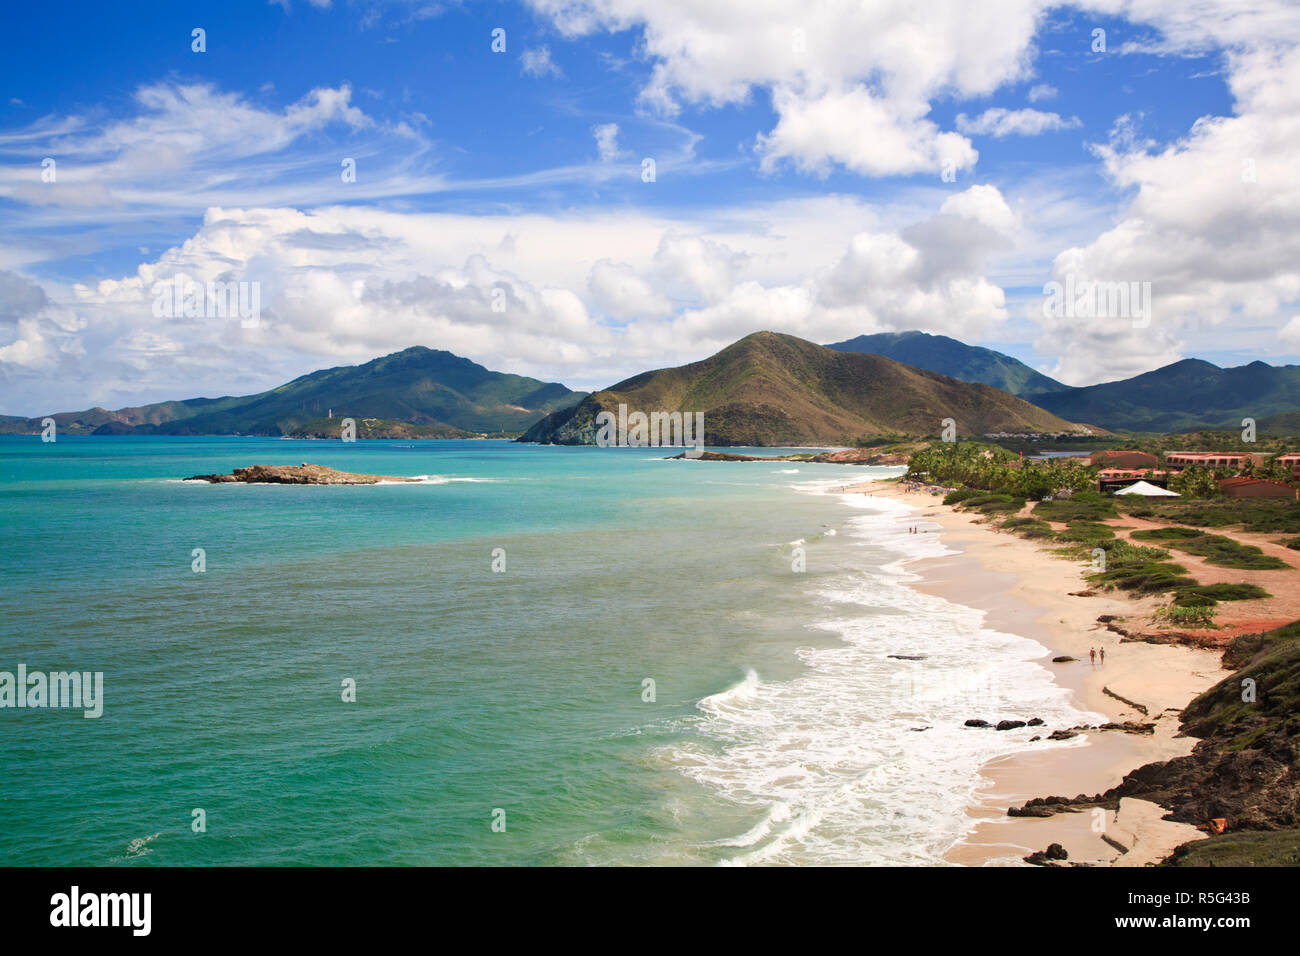 Venezuela, Nueva Esparta, Isla De Margarita - Margarita Island, Beach after Playa Caribe Stock Photo